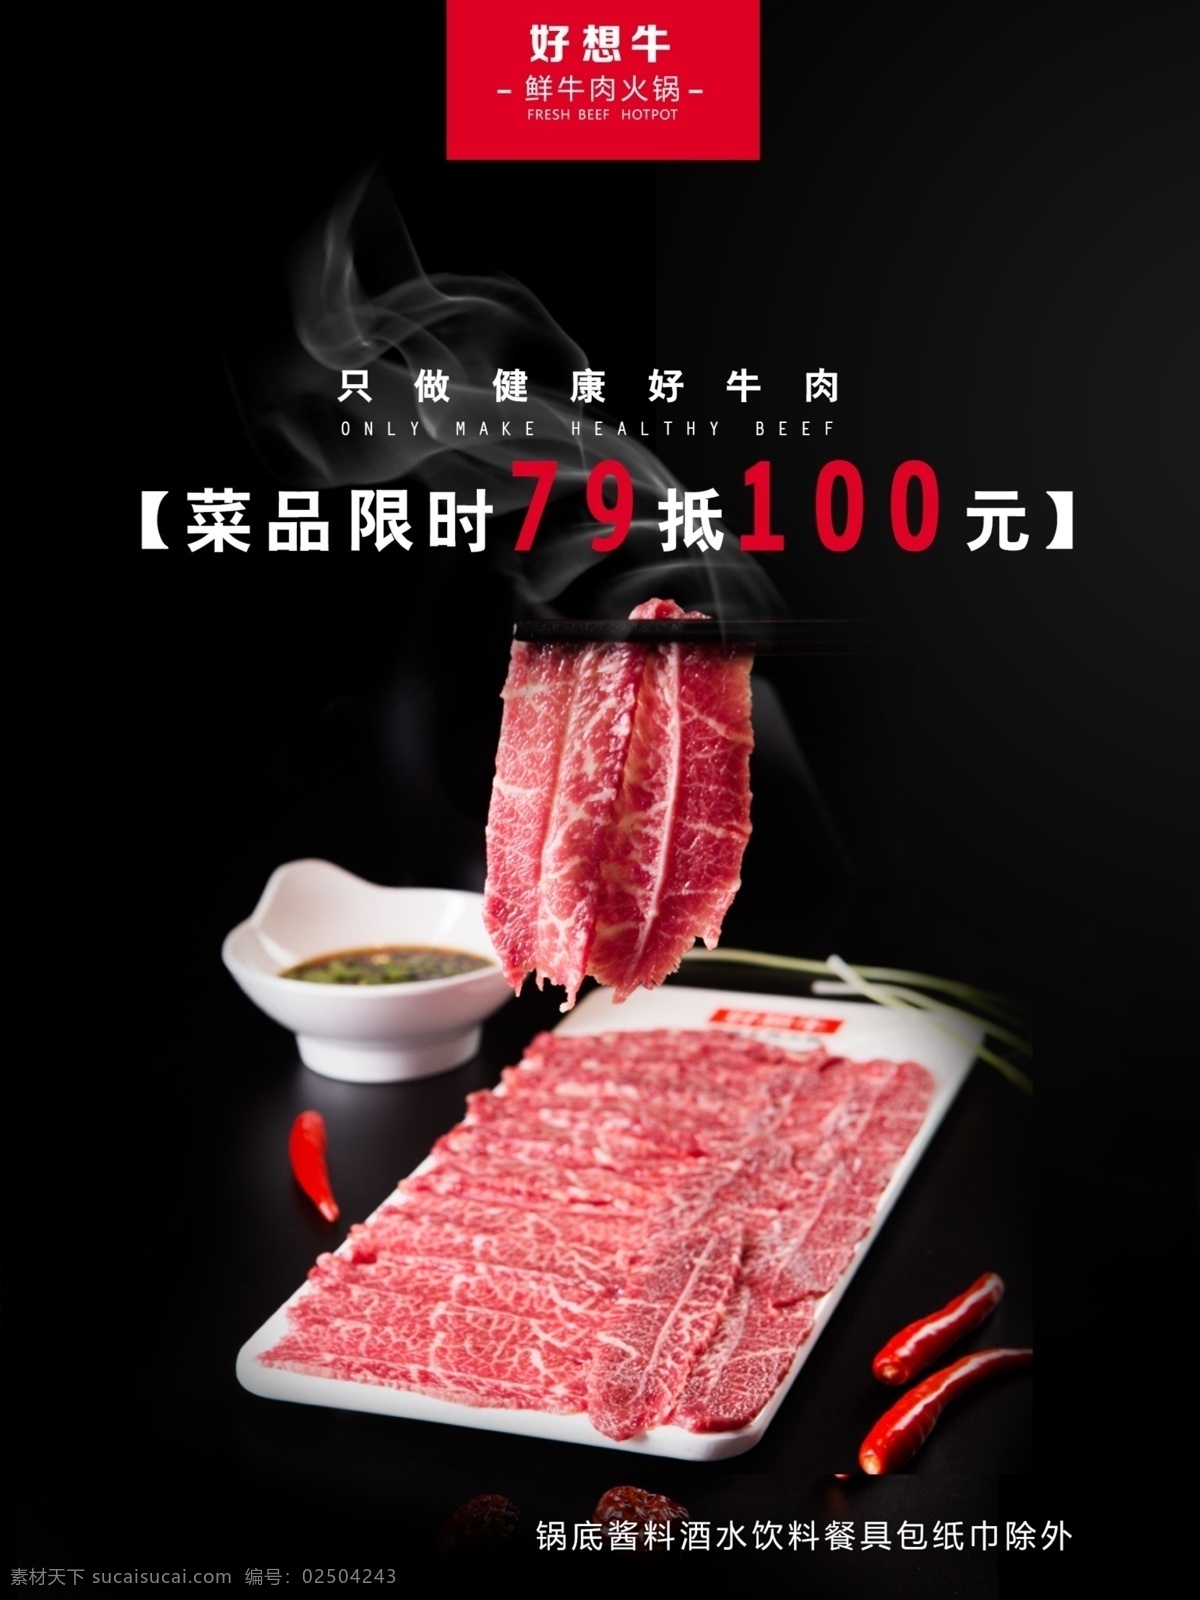 牛肉火锅 牛排 美味牛排 牛肉 火锅 新鲜牛肉 套餐